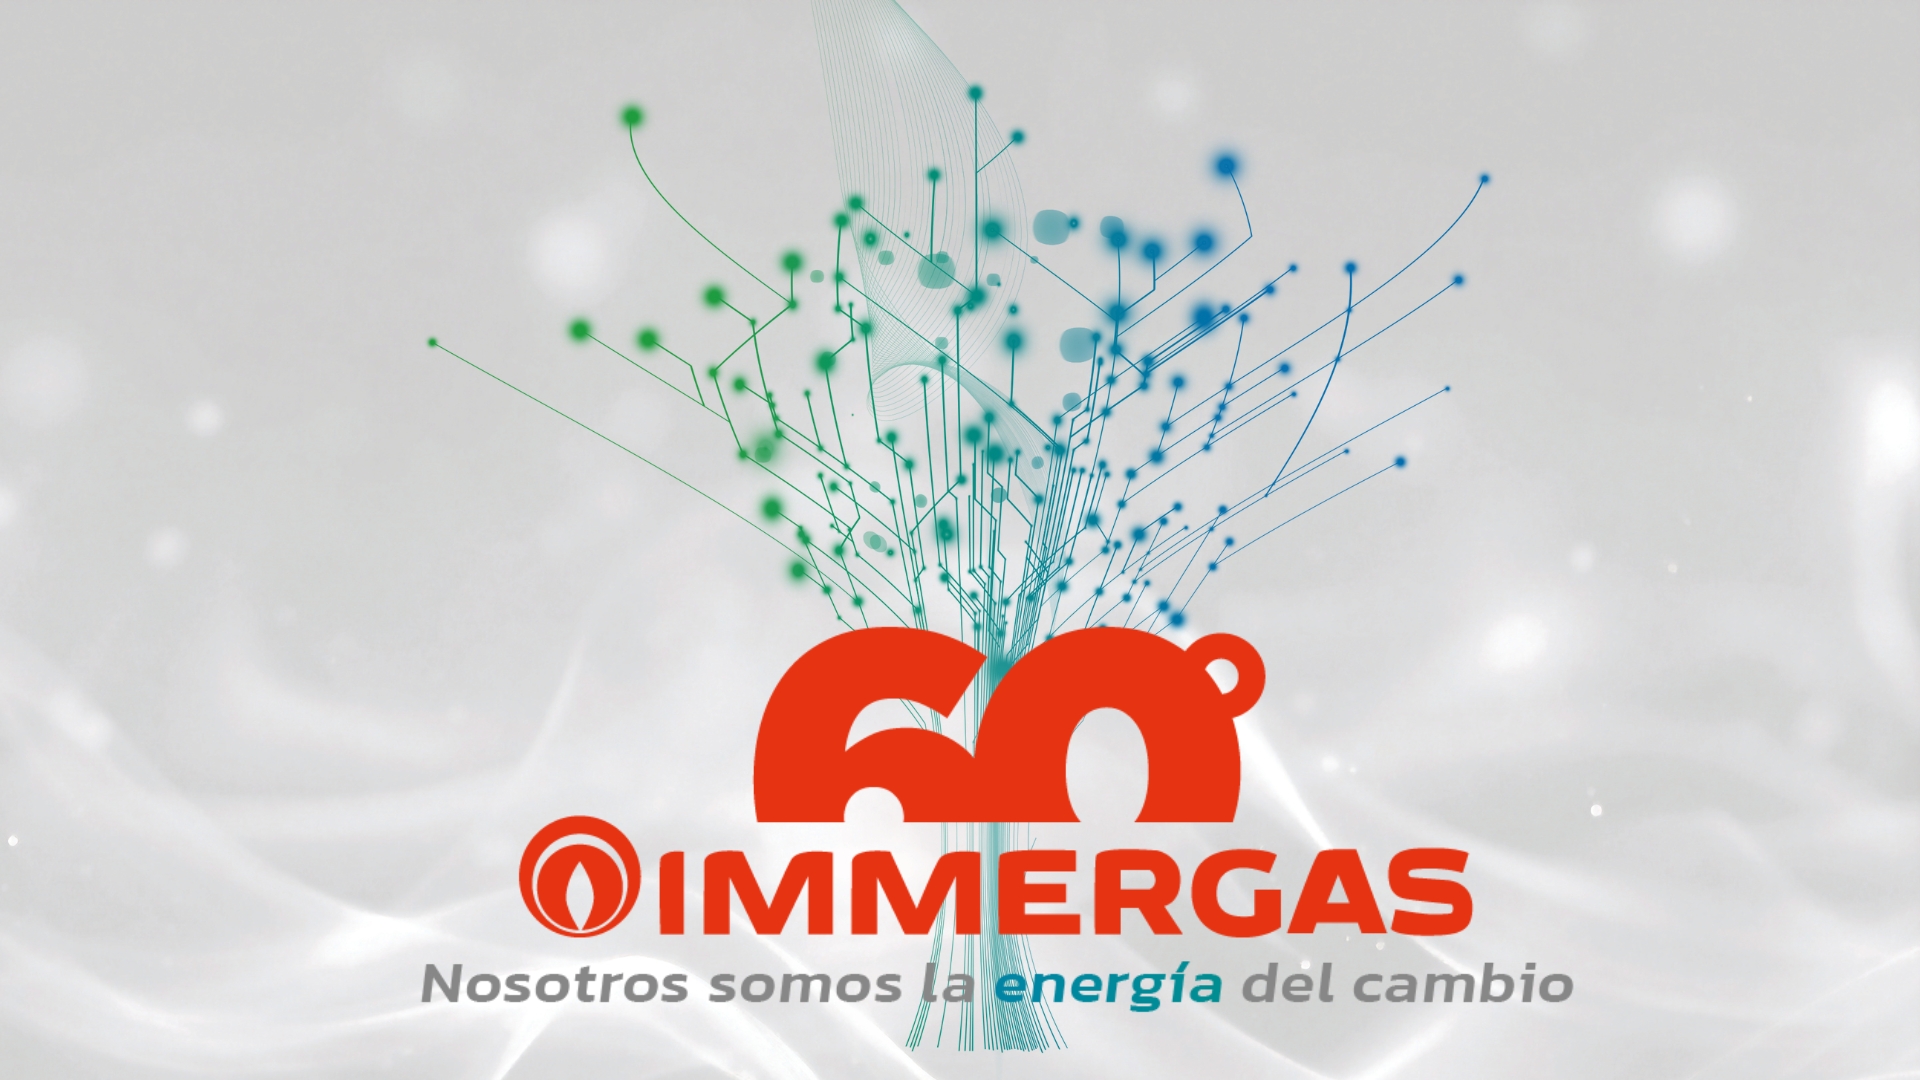 Immergas celebra su 60 Aniversario, bajo el eslogan: "Nosotros somos la energía del cambio".